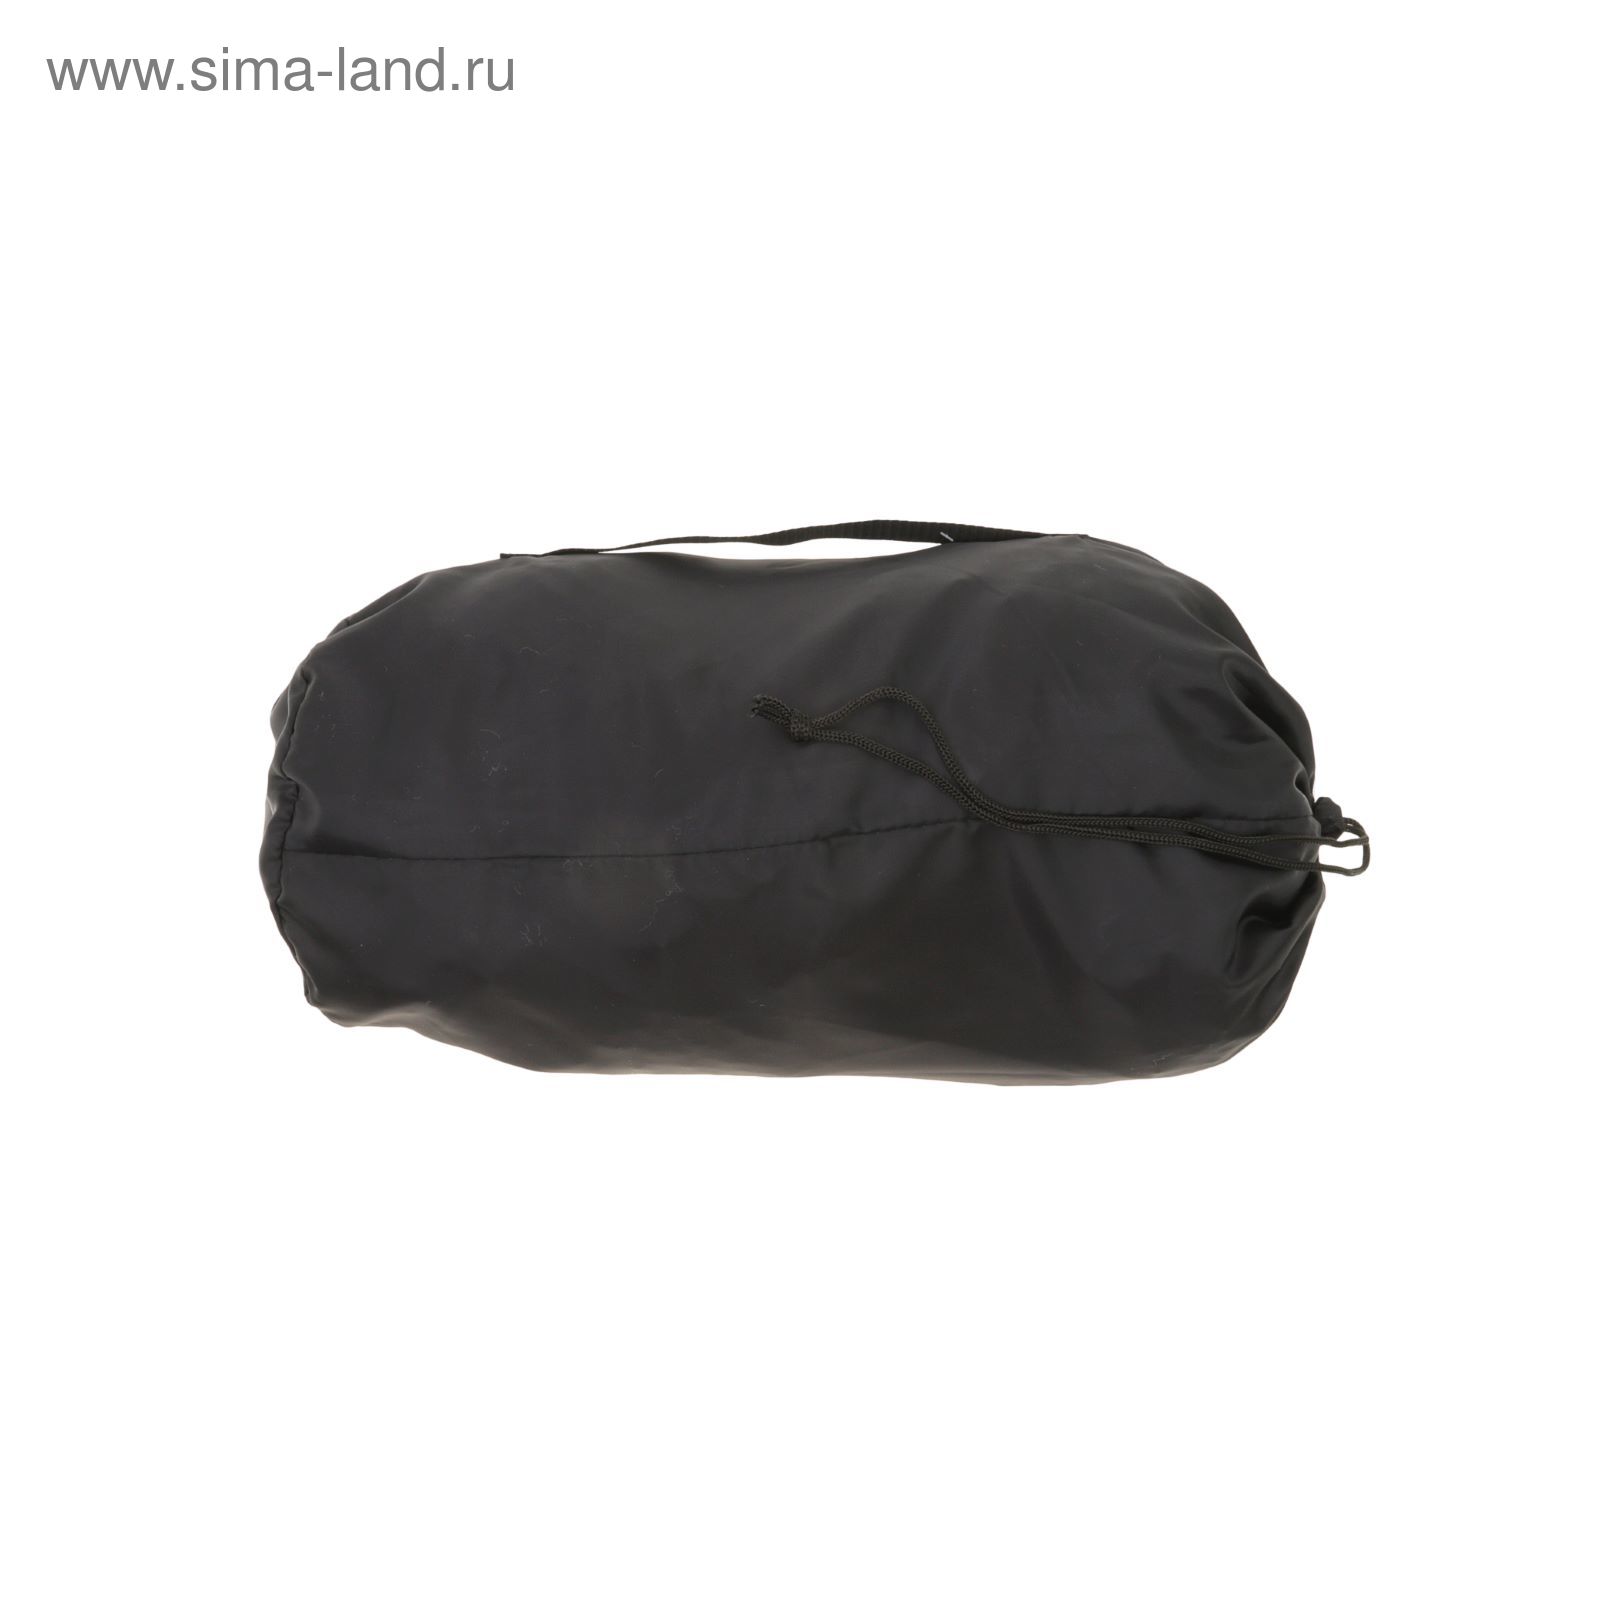 Спальный мешок "Эконом+", 2-х слойный, размер 225 х 70 см